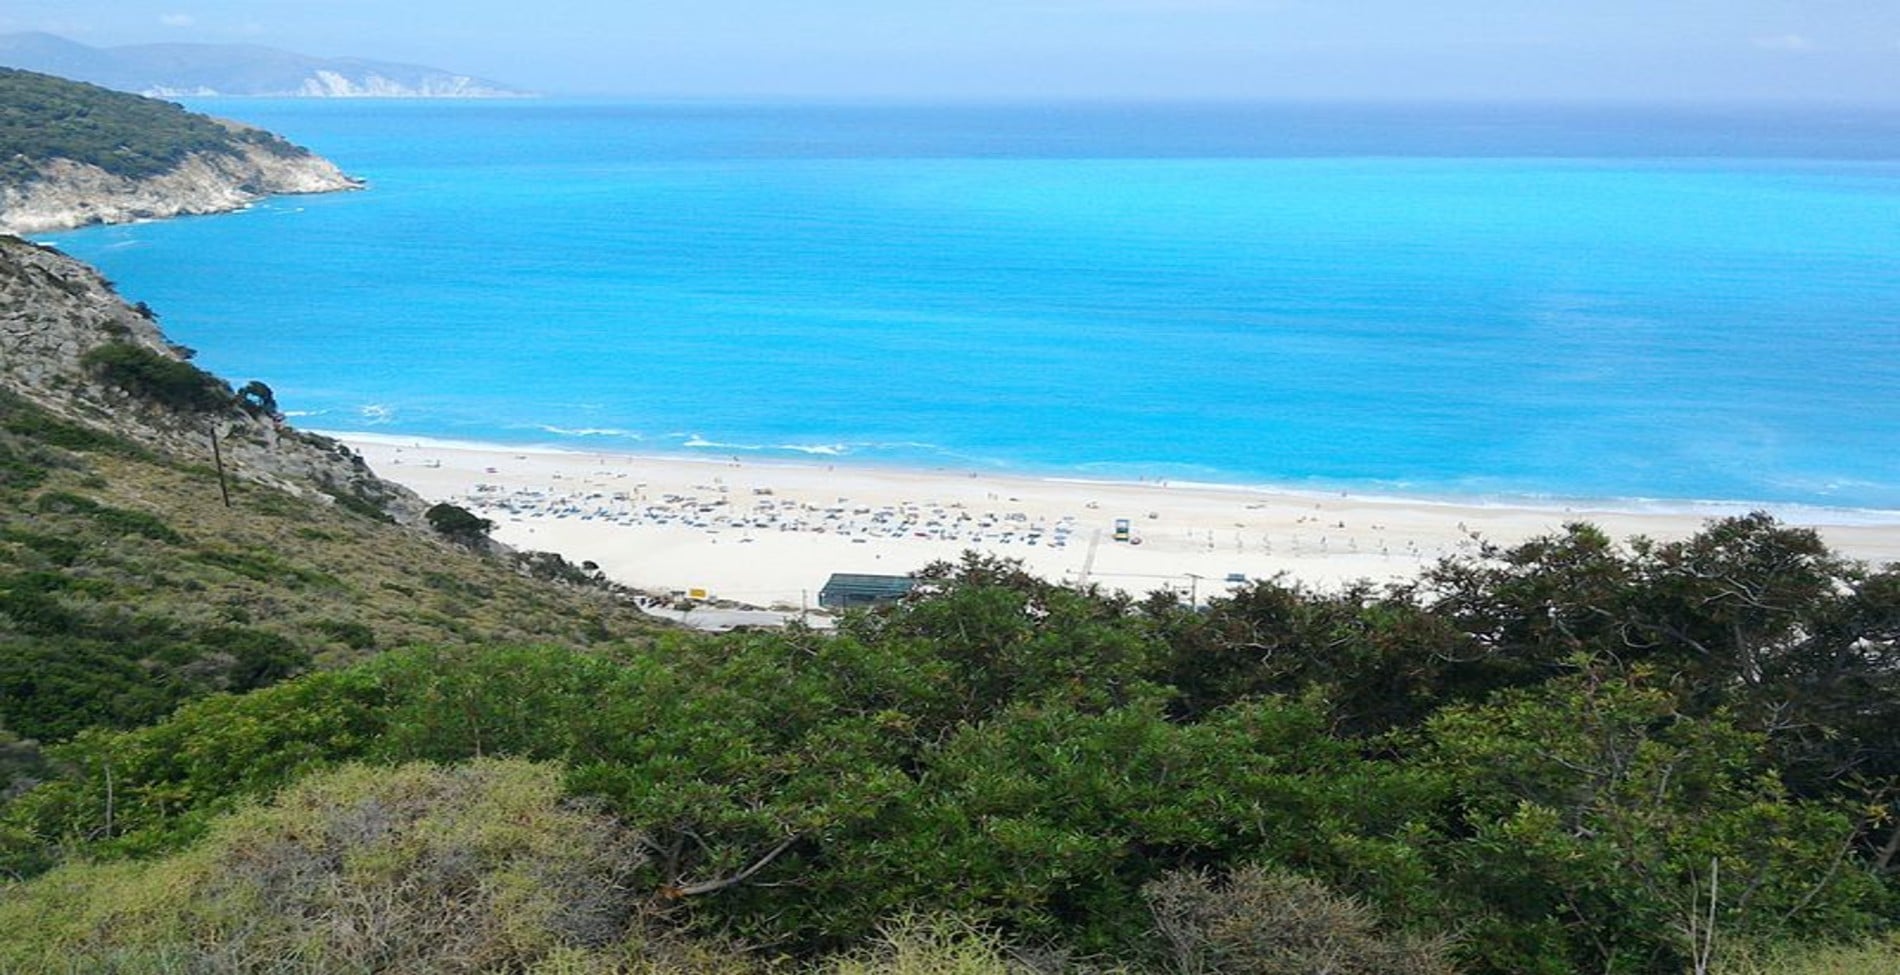 Η ελληνική παραλία που αποκαλείται «μικρό κομμάτι του ουρανού»1